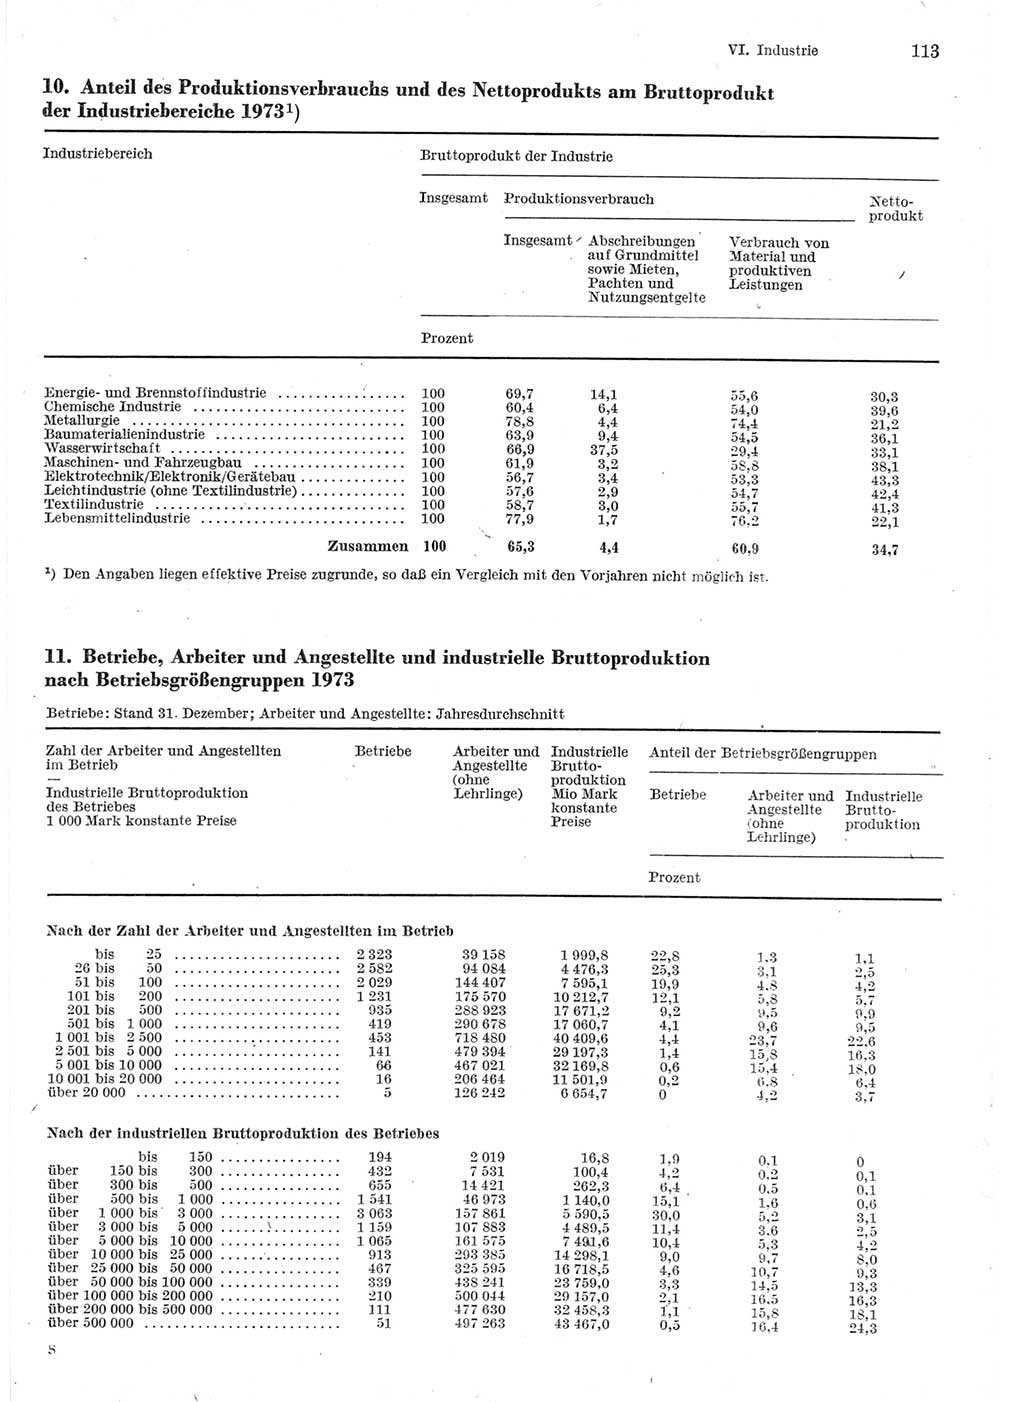 Statistisches Jahrbuch der Deutschen Demokratischen Republik (DDR) 1975, Seite 113 (Stat. Jb. DDR 1975, S. 113)